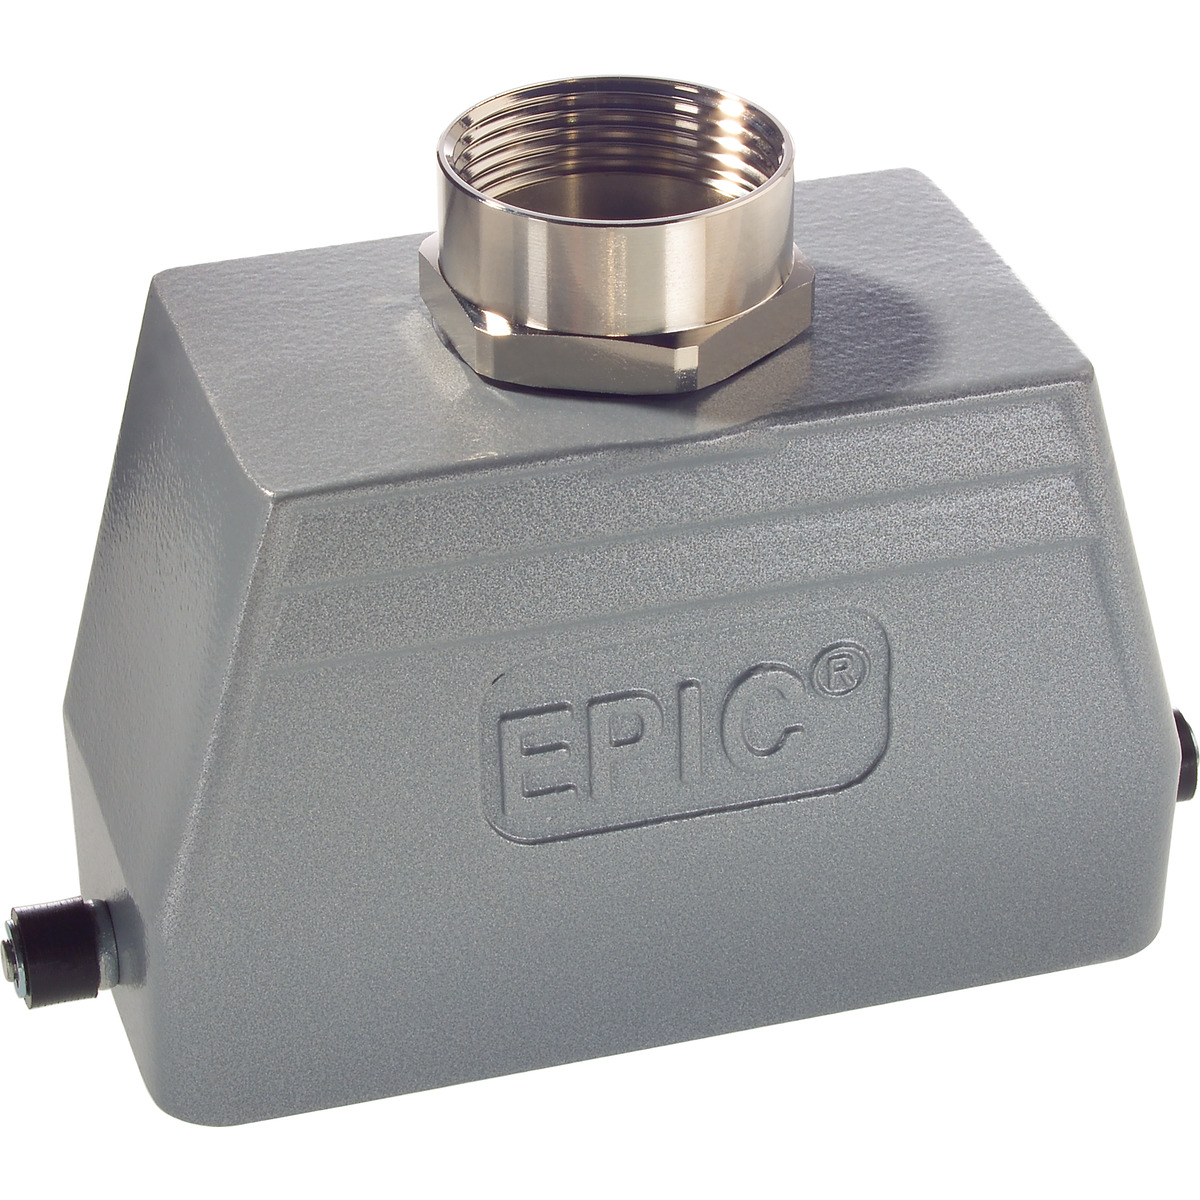 EPIC® H-B 10 TG-RO Tüllengehäuse